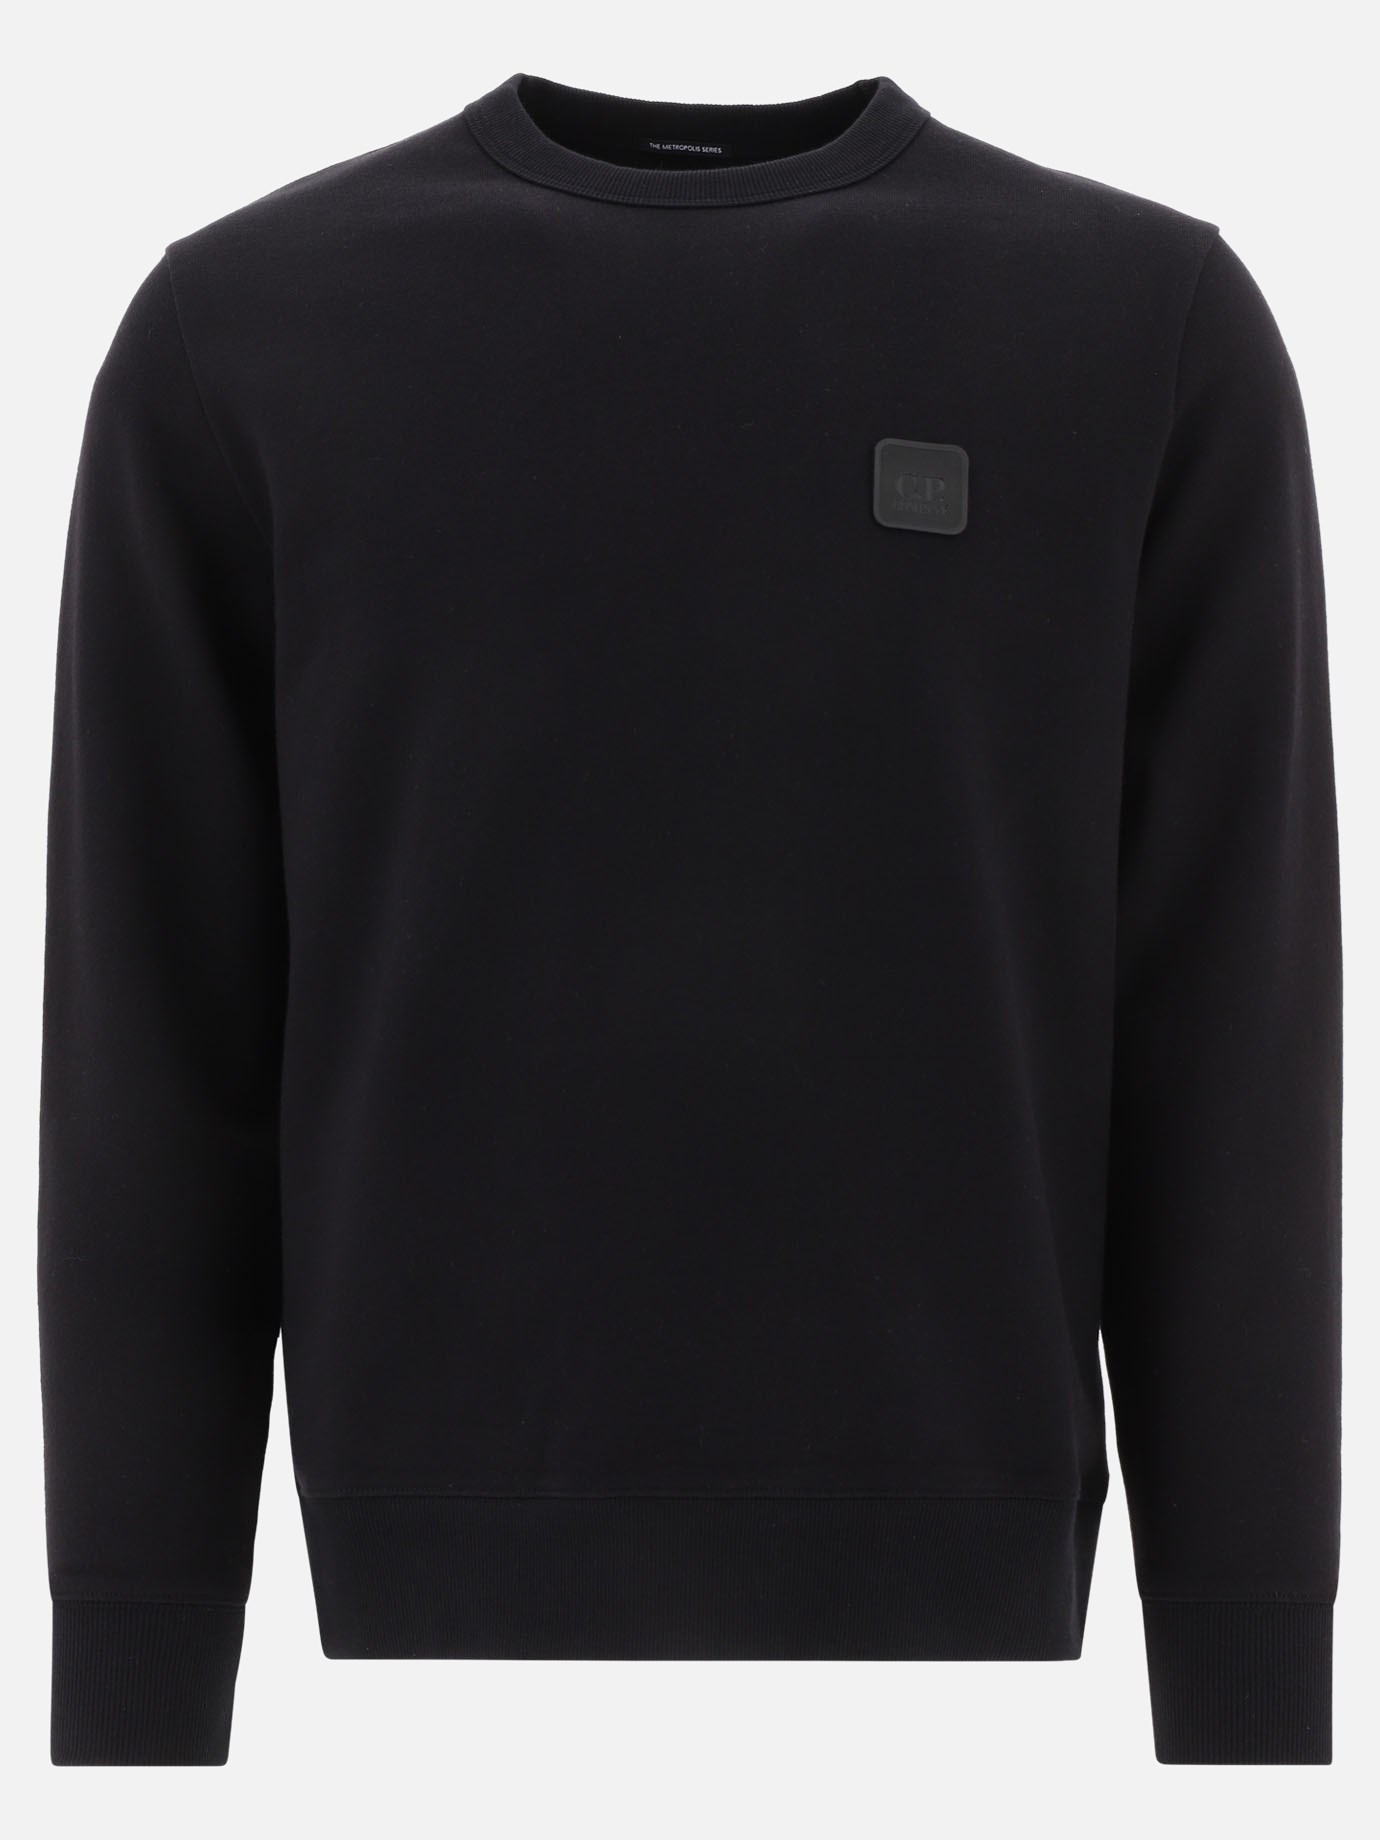  Diagonal Raised  sweatshirt by C.P. Company